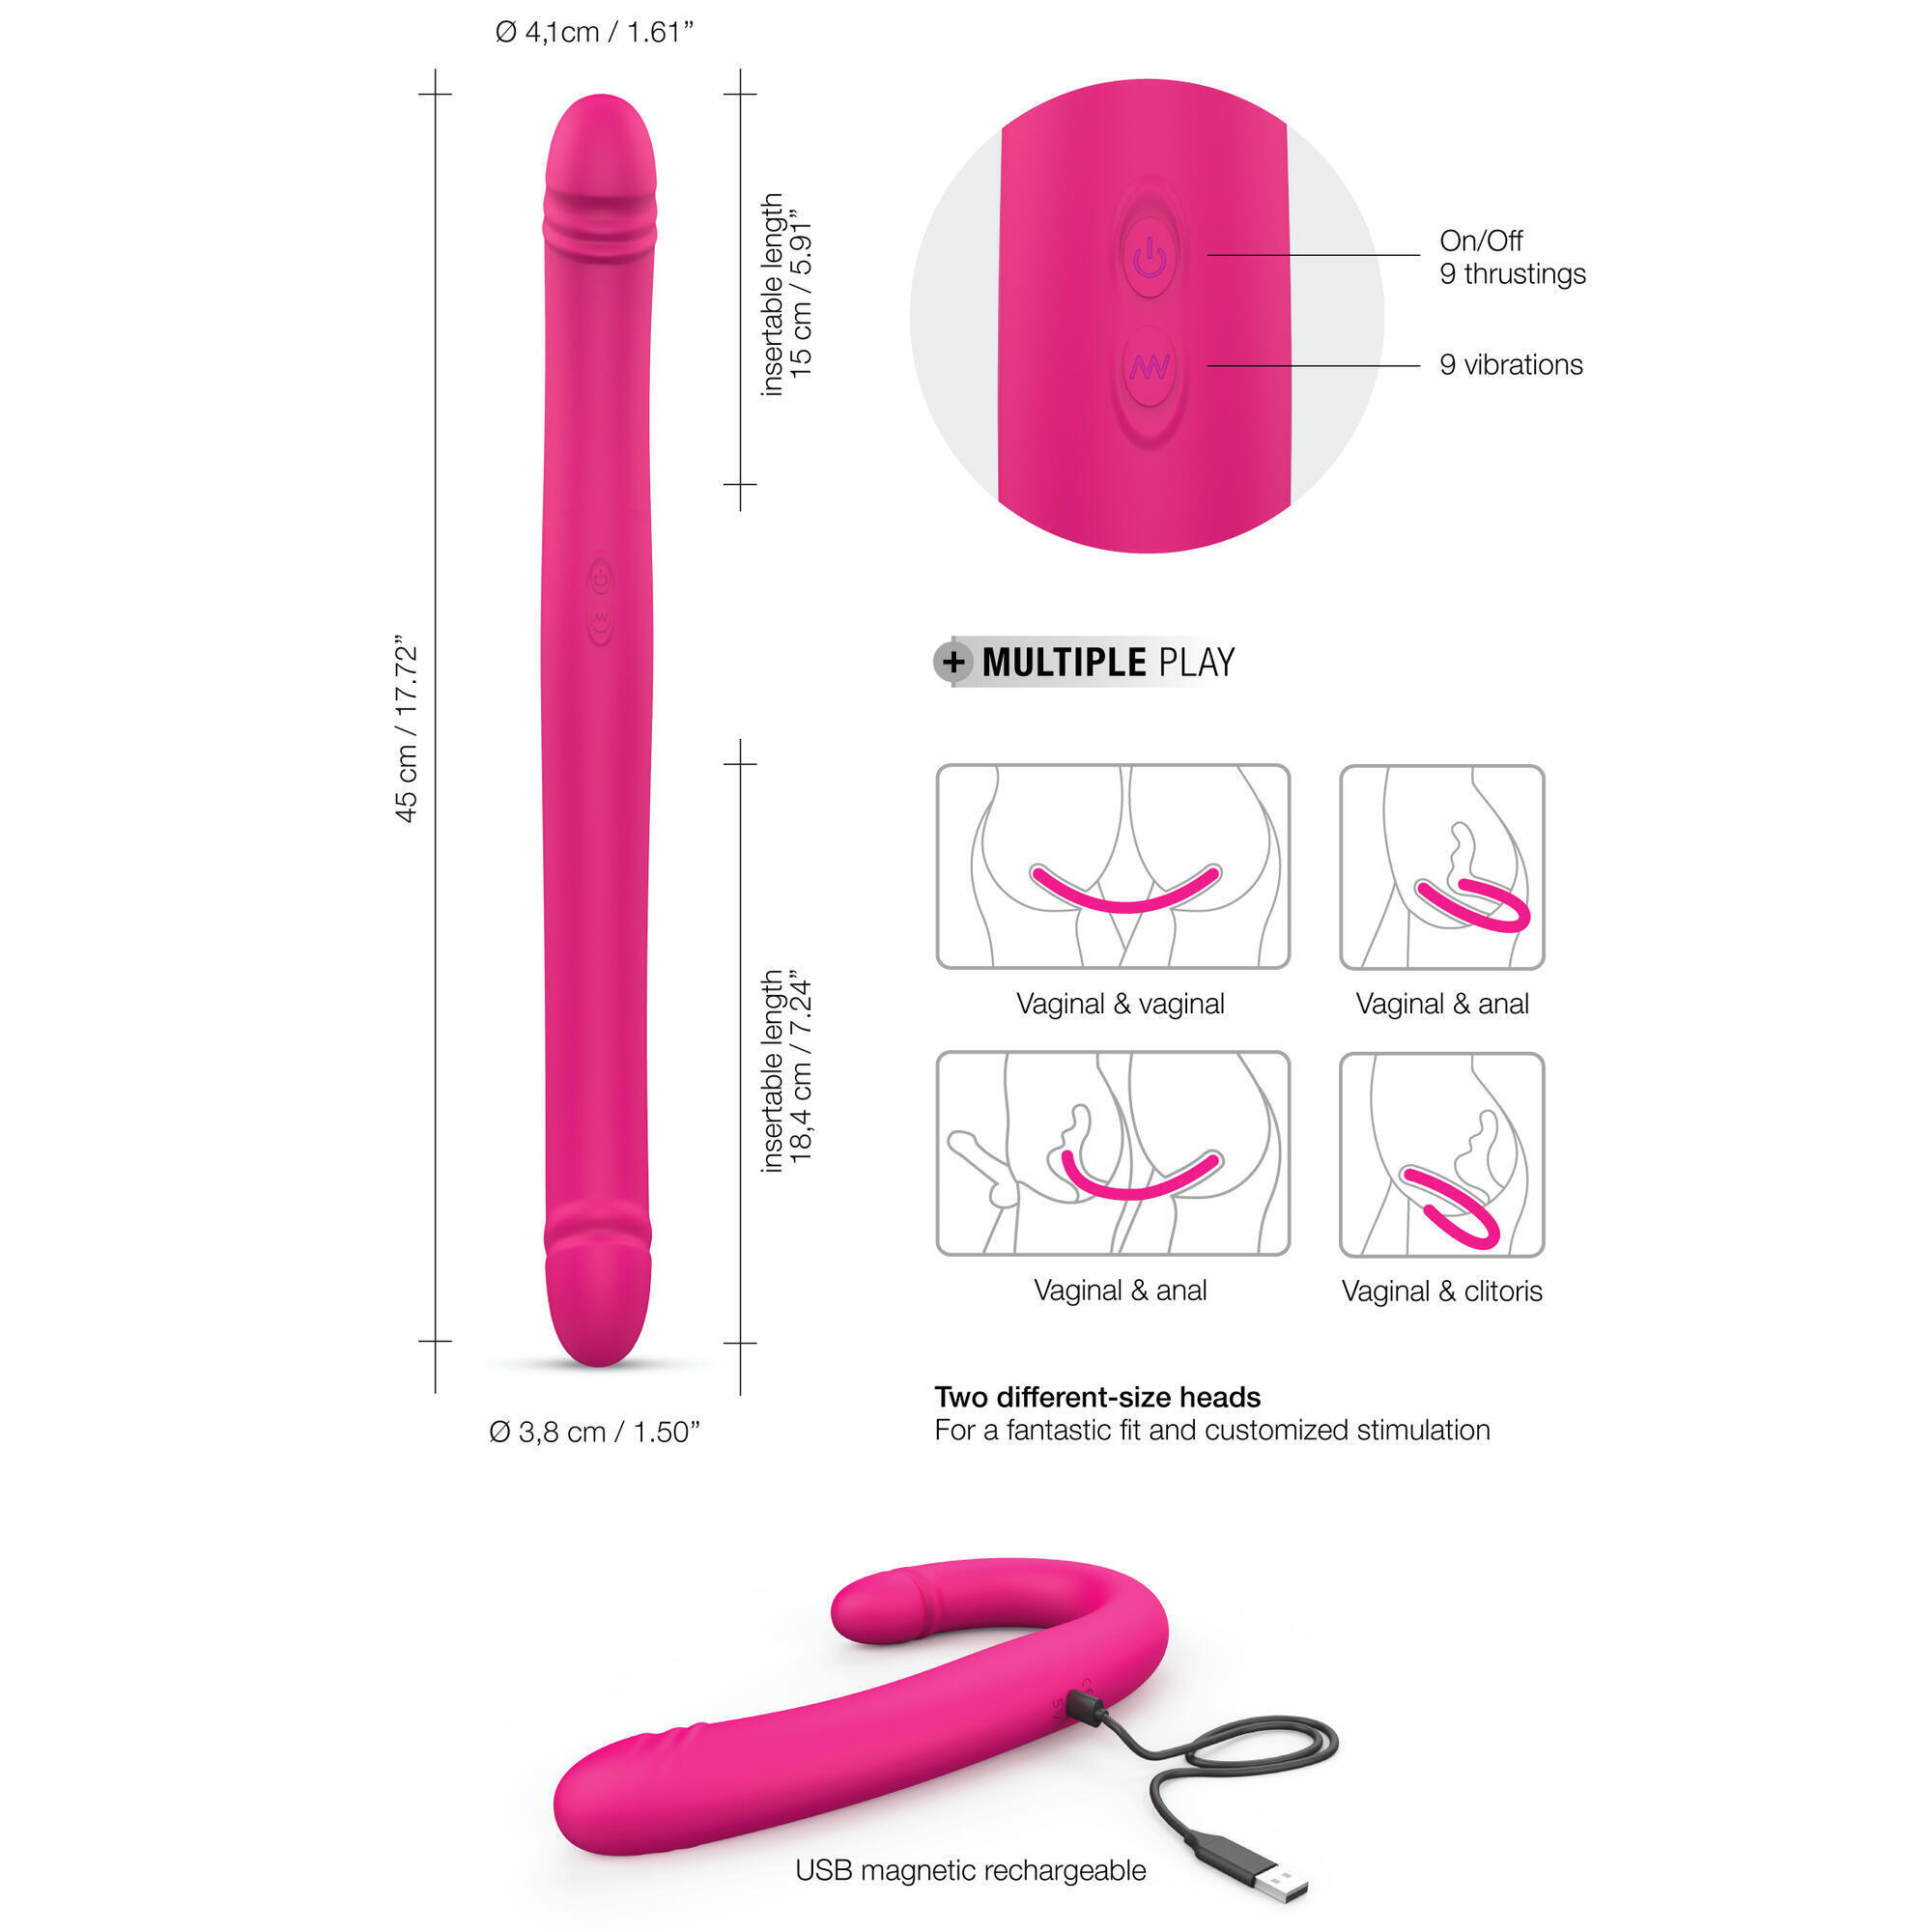 Двухсторонний фаллоимитатор с вибрацией и фиксацией формы Dorcel Orgasmic Double Do, розовый